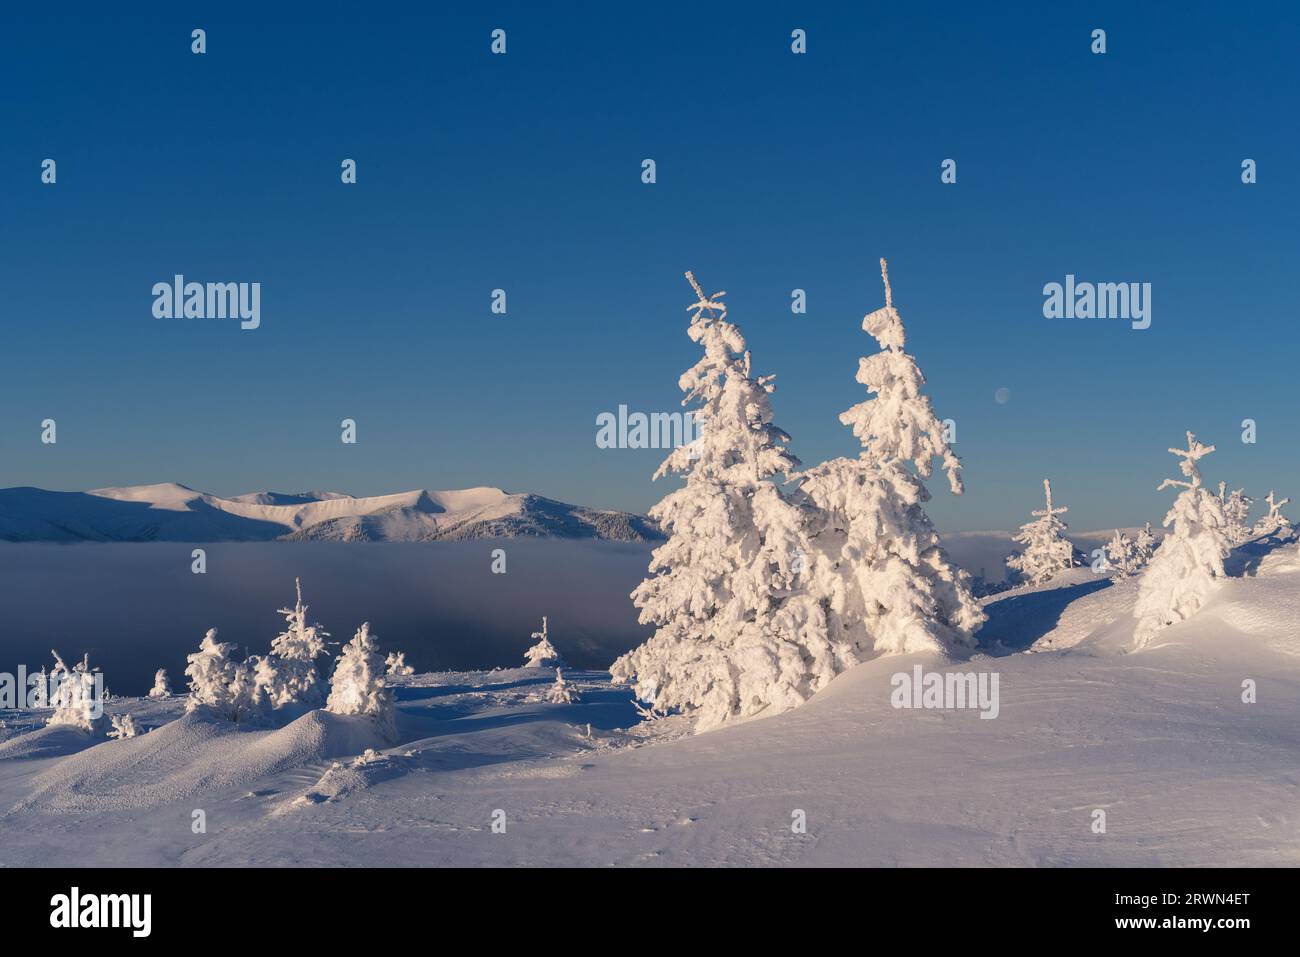 Paysage d'hiver ensoleillé avec des sapins couverts de neige dans les montagnes Banque D'Images